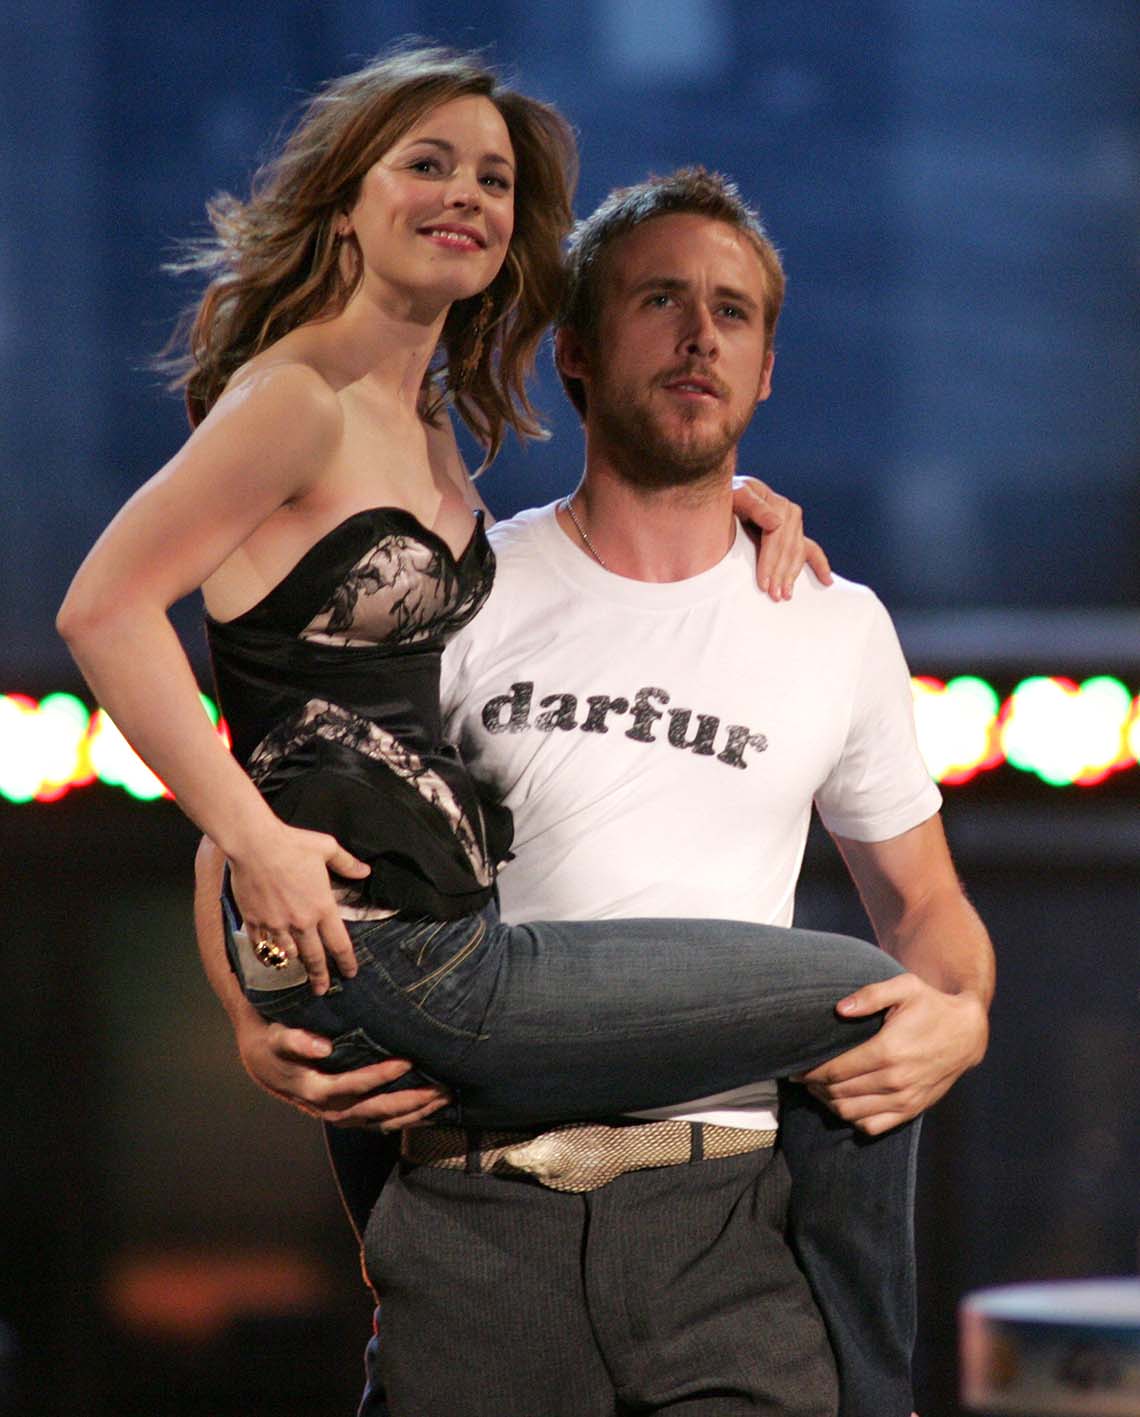 Οι ηθοποιοί Rachel McAdams και Ryan Gosling, στην ταινία "The Notebook".